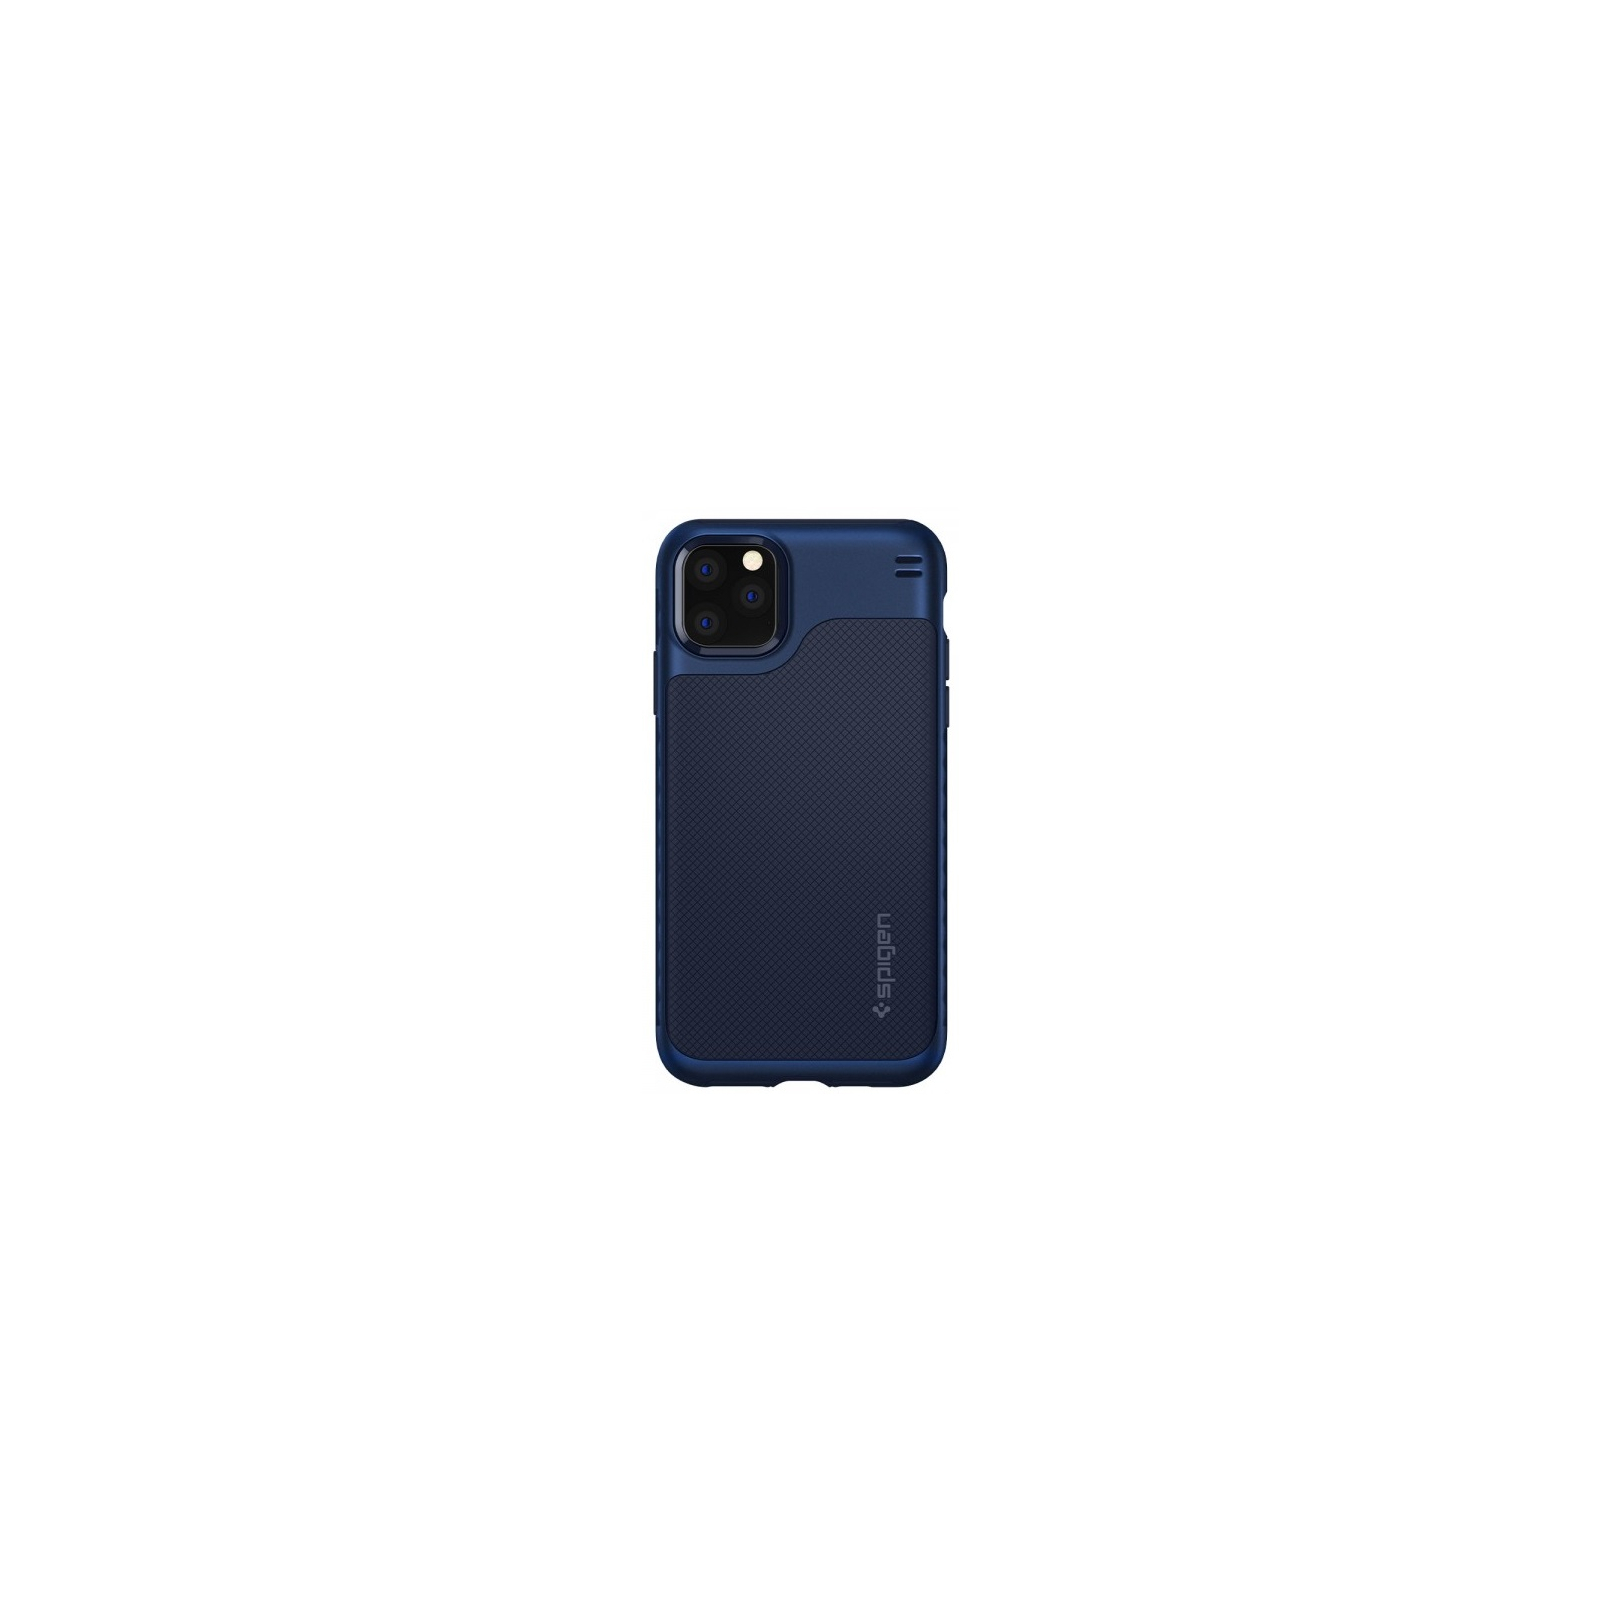 Чохол до мобільного телефона Spigen iPhone 11 Pro Max Hybrid NX, Navy Blue (075CS27046)